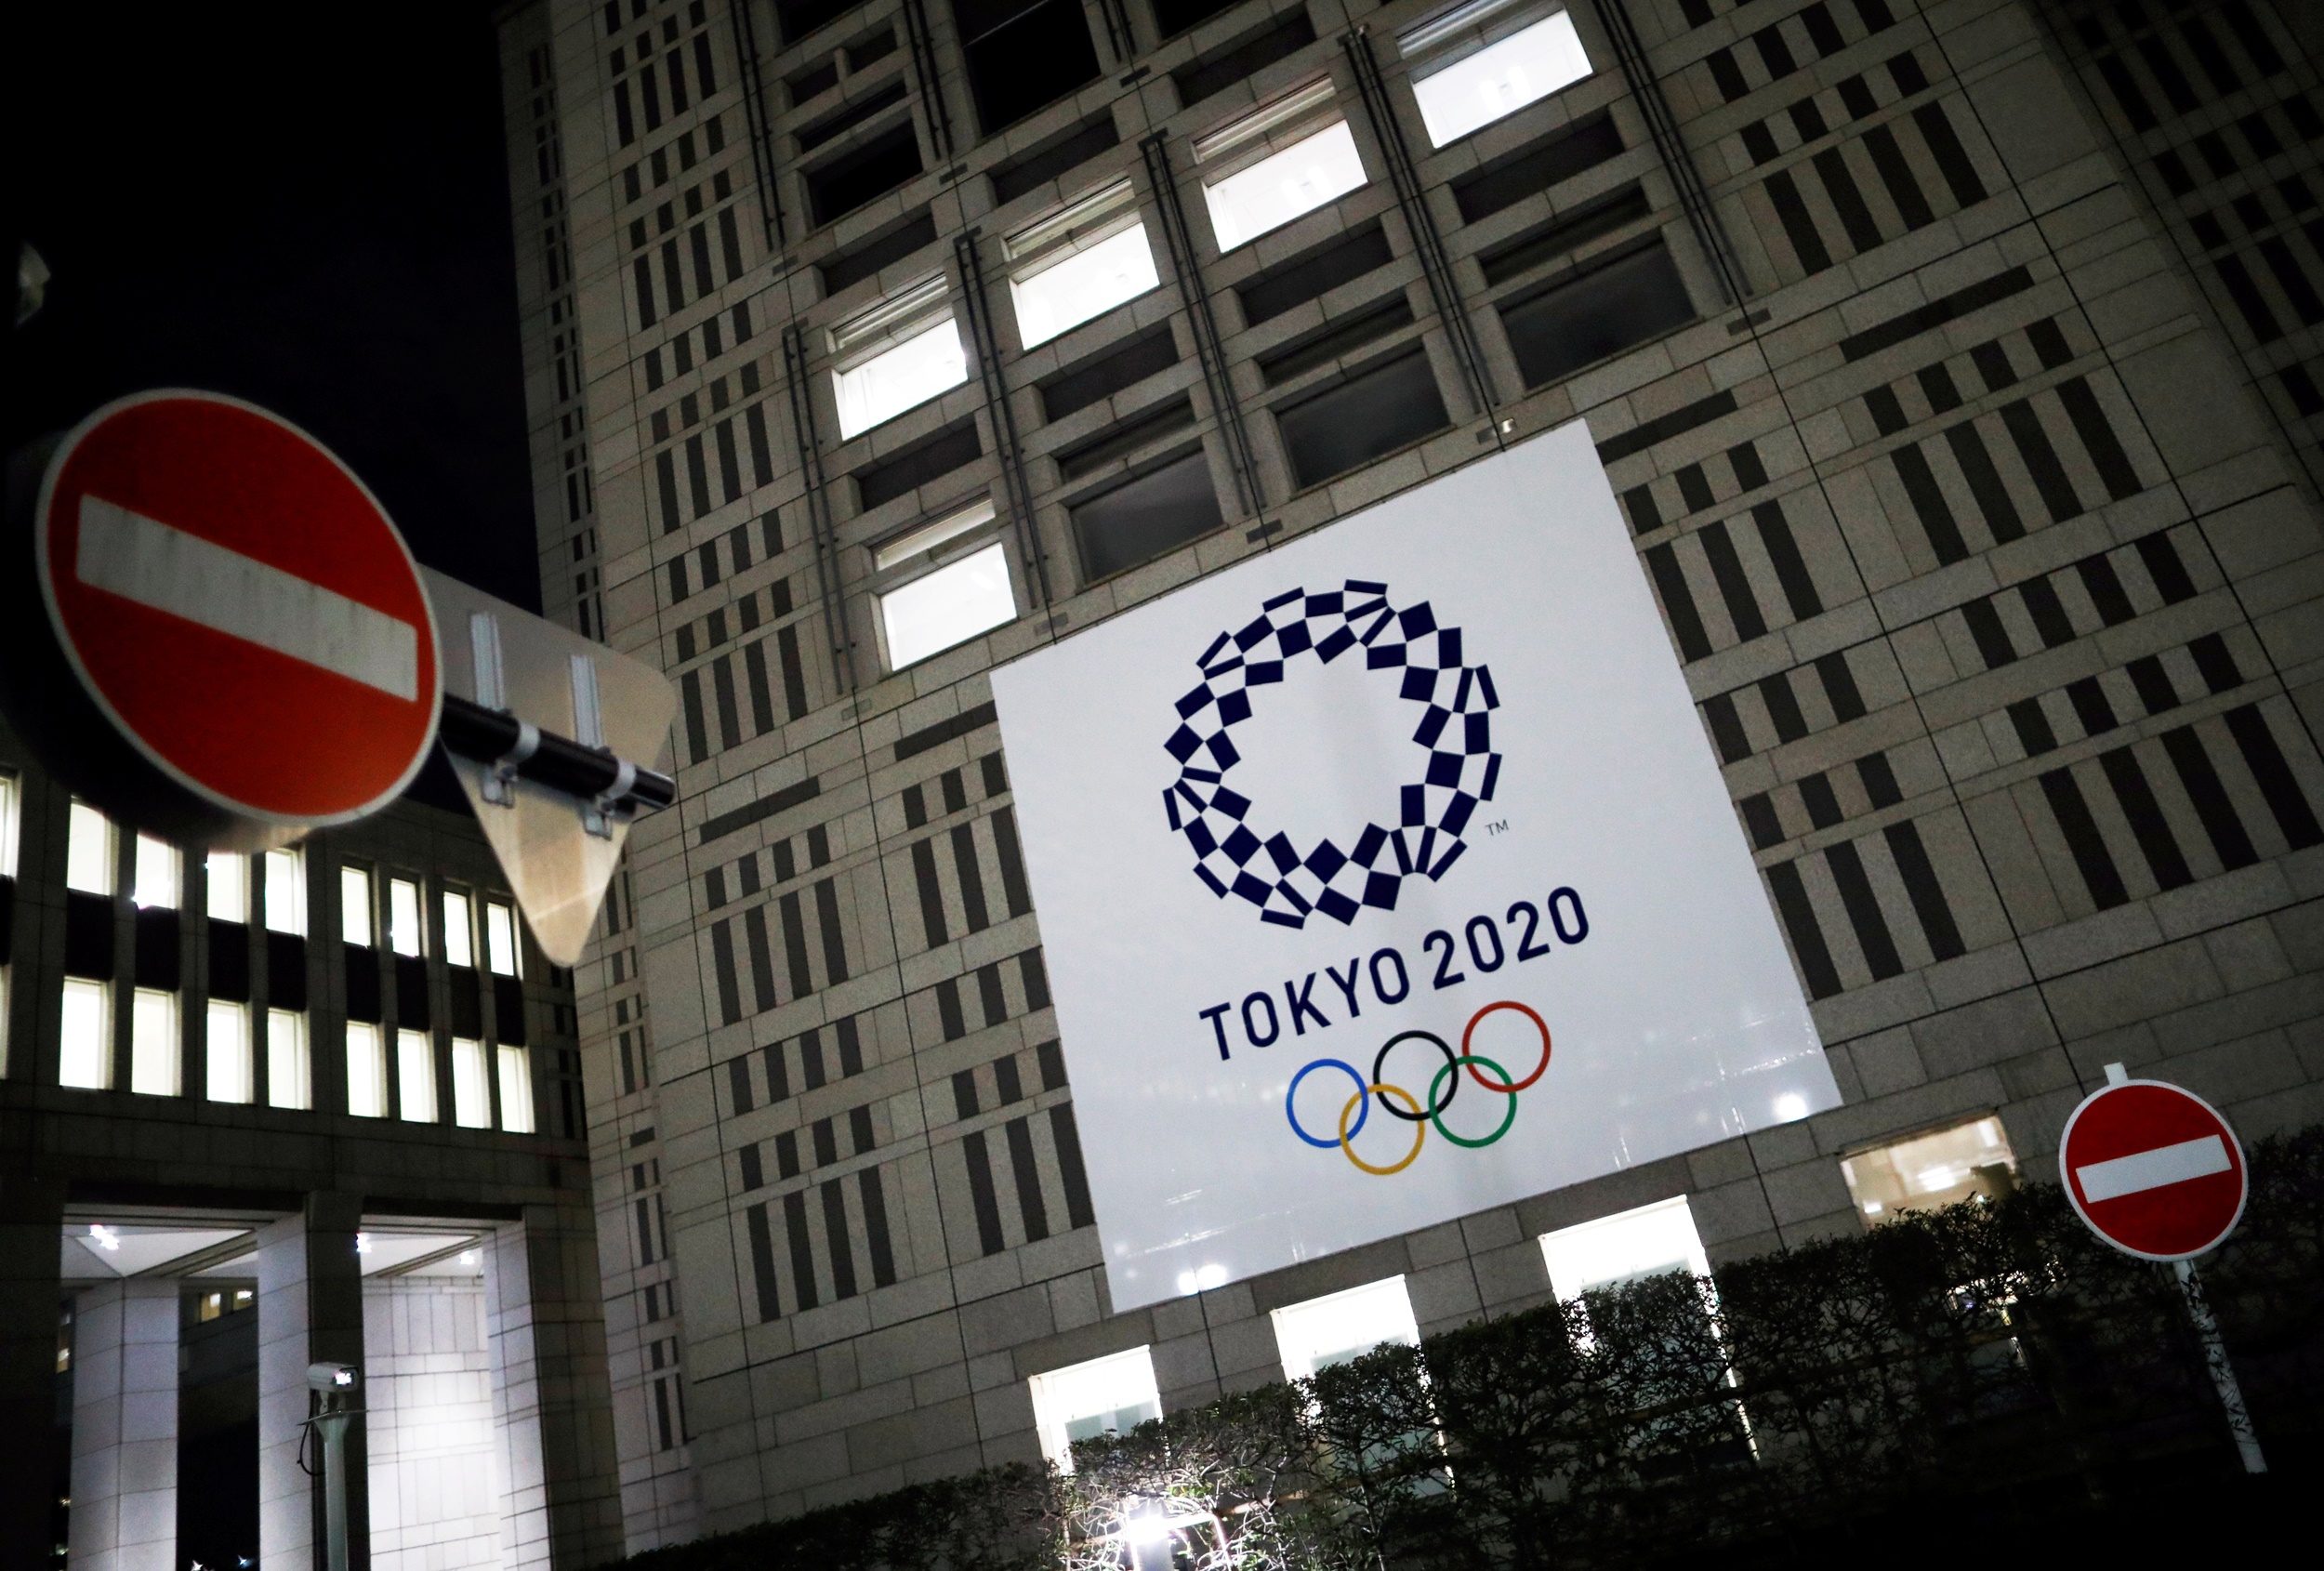 สปอนเซอร์โอลิมปิกร่วมเรียกร้องนายกฯญี่ปุ่นสั่งยกเลิกการแข่งขันปีนี้